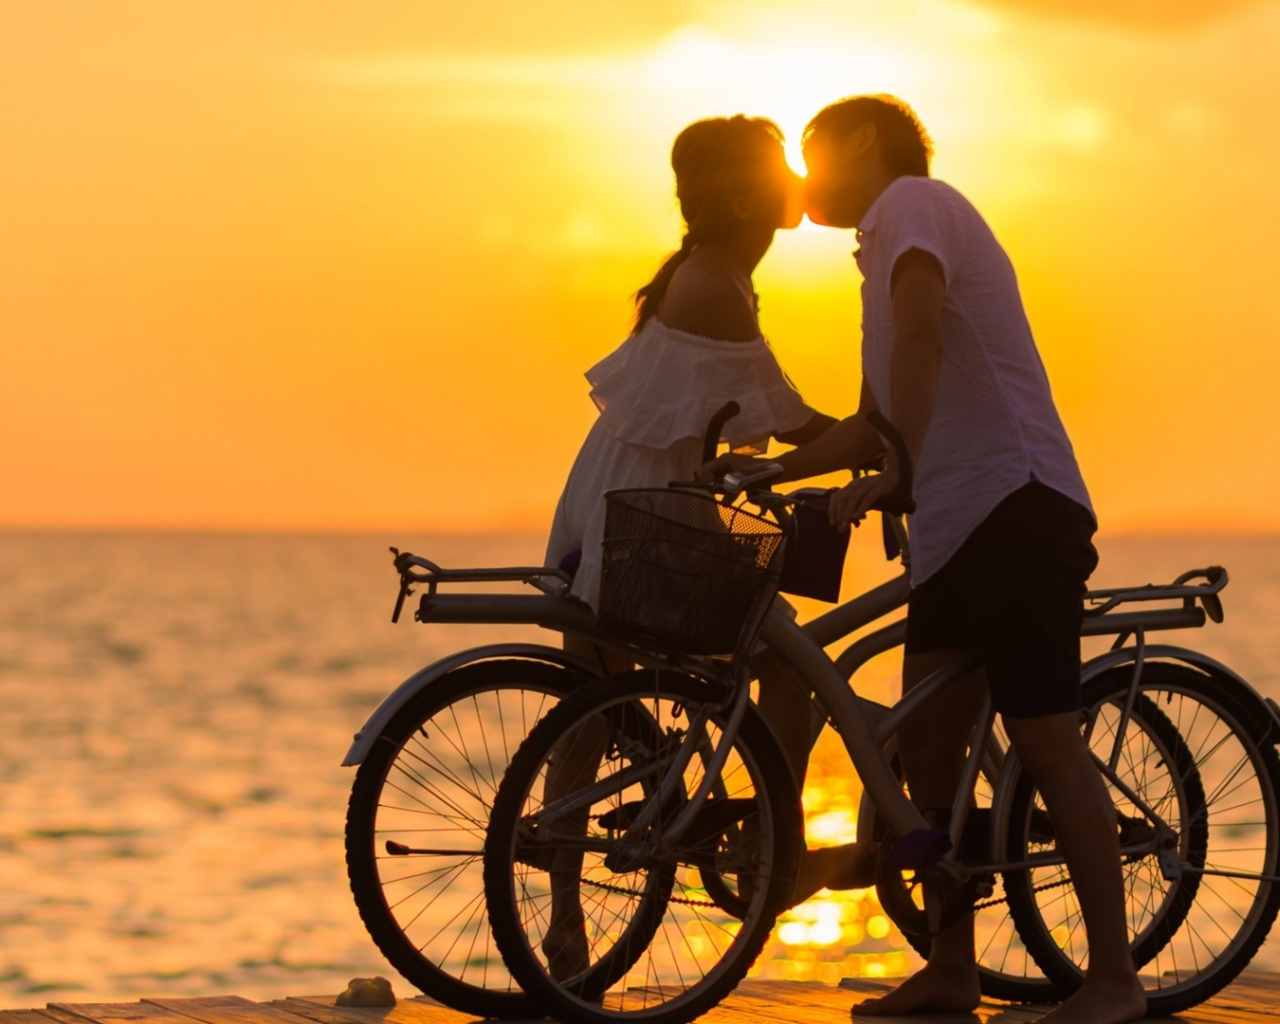 двое, влюблённые, на велосипедах, поцелуй